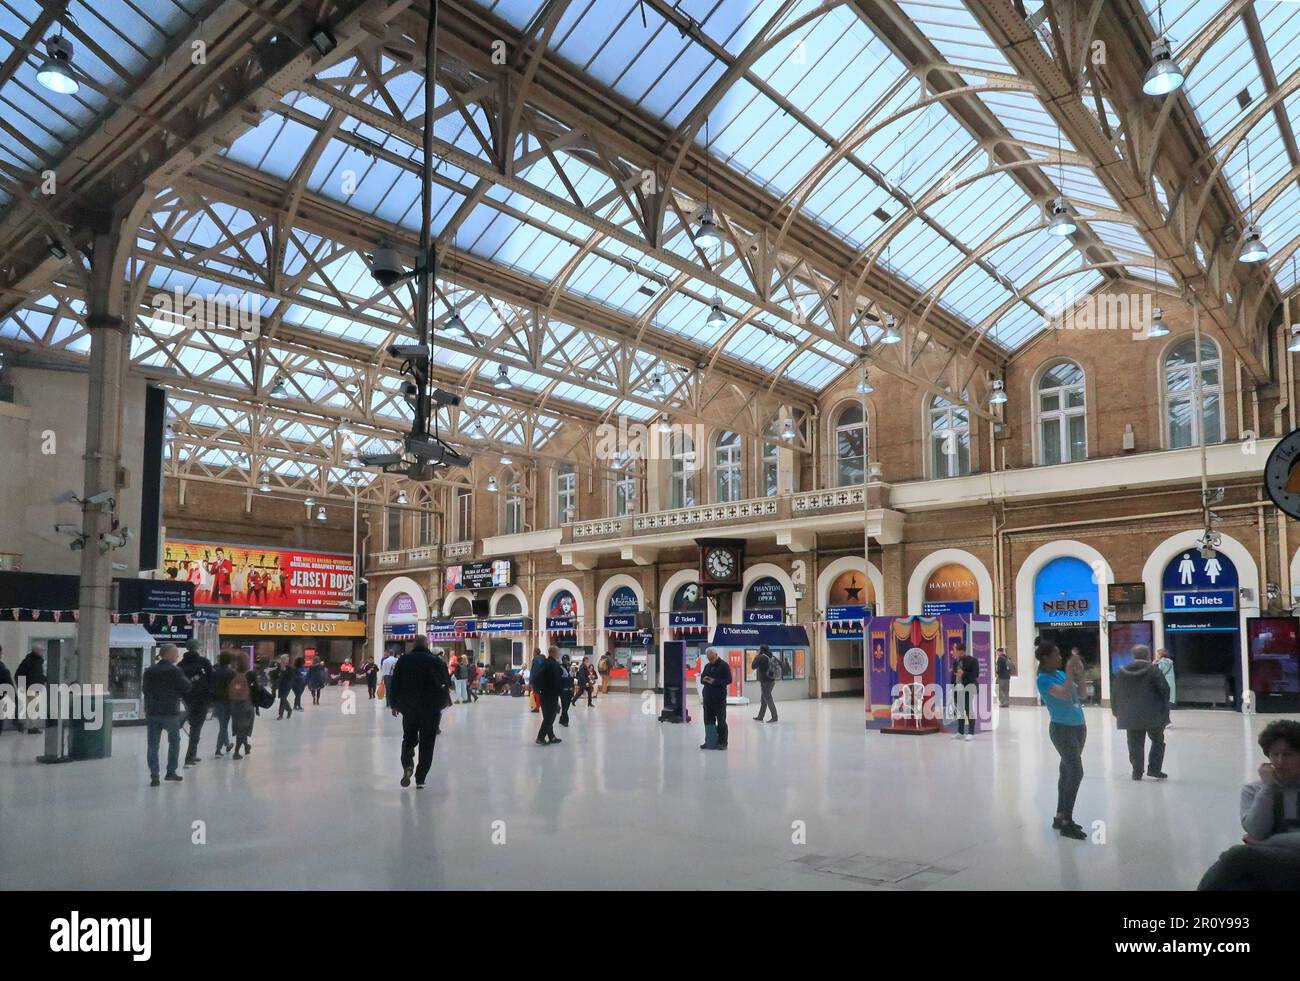 Haupthalle am Bahnhof Charing Cross, London, Großbritannien. Zeigt ein viktorianisches Glasdach. Stockfoto